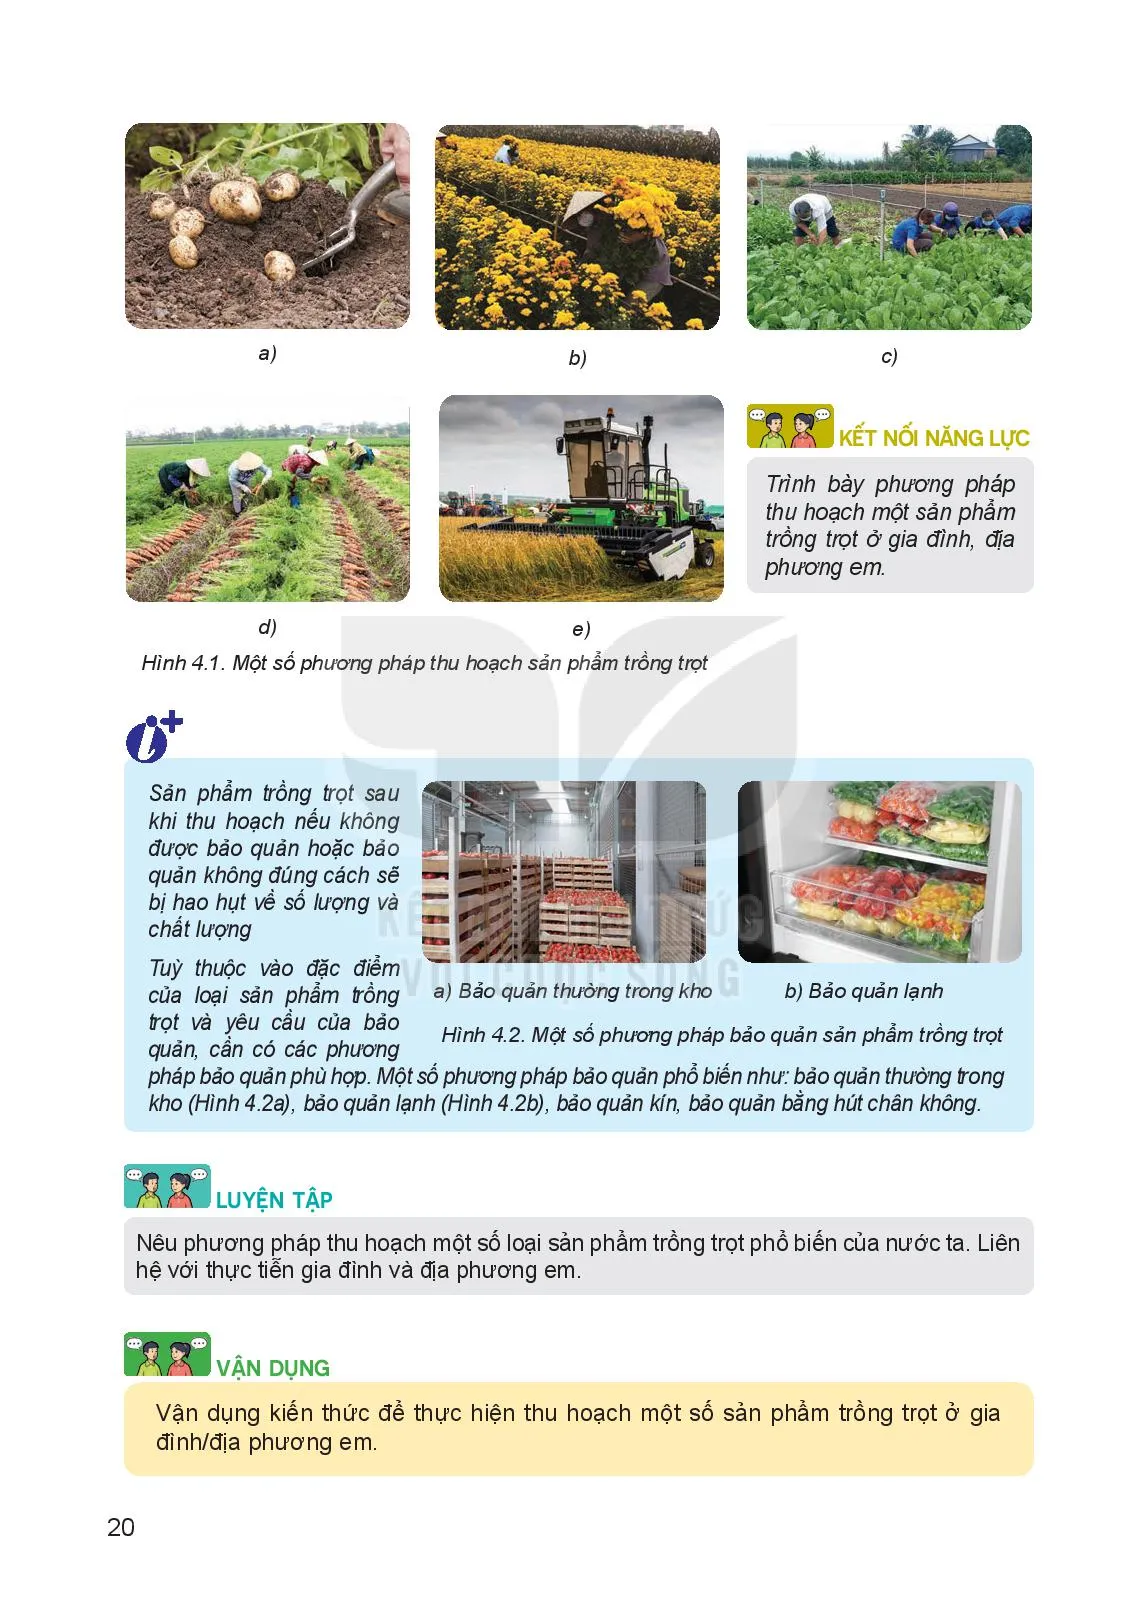 Bài 4. Thu hoạch sản phẩm trồng trọt